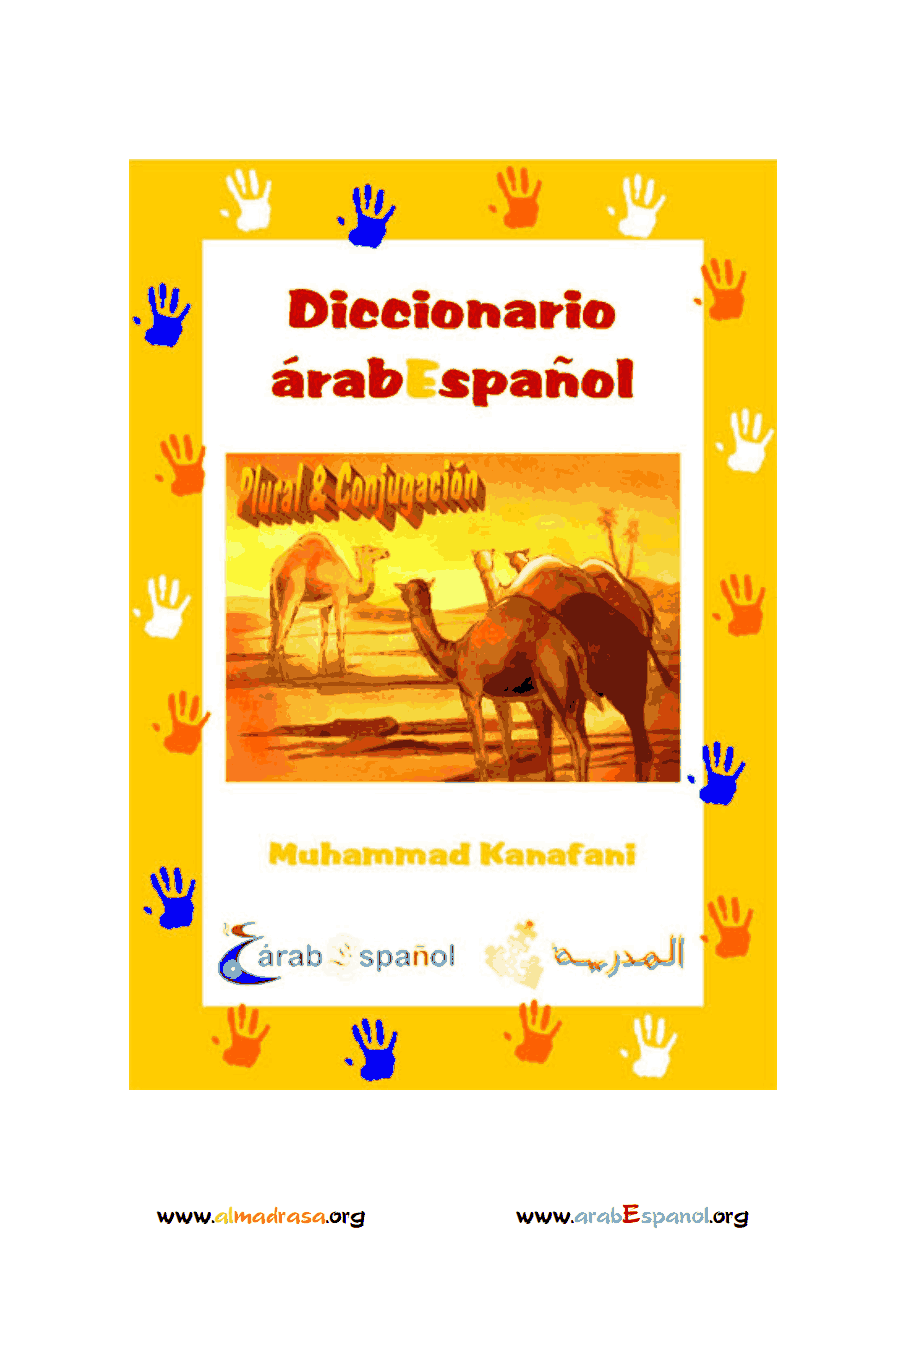 Diccionario Árabe – Español para principiantes, plurales y conjugación verbal